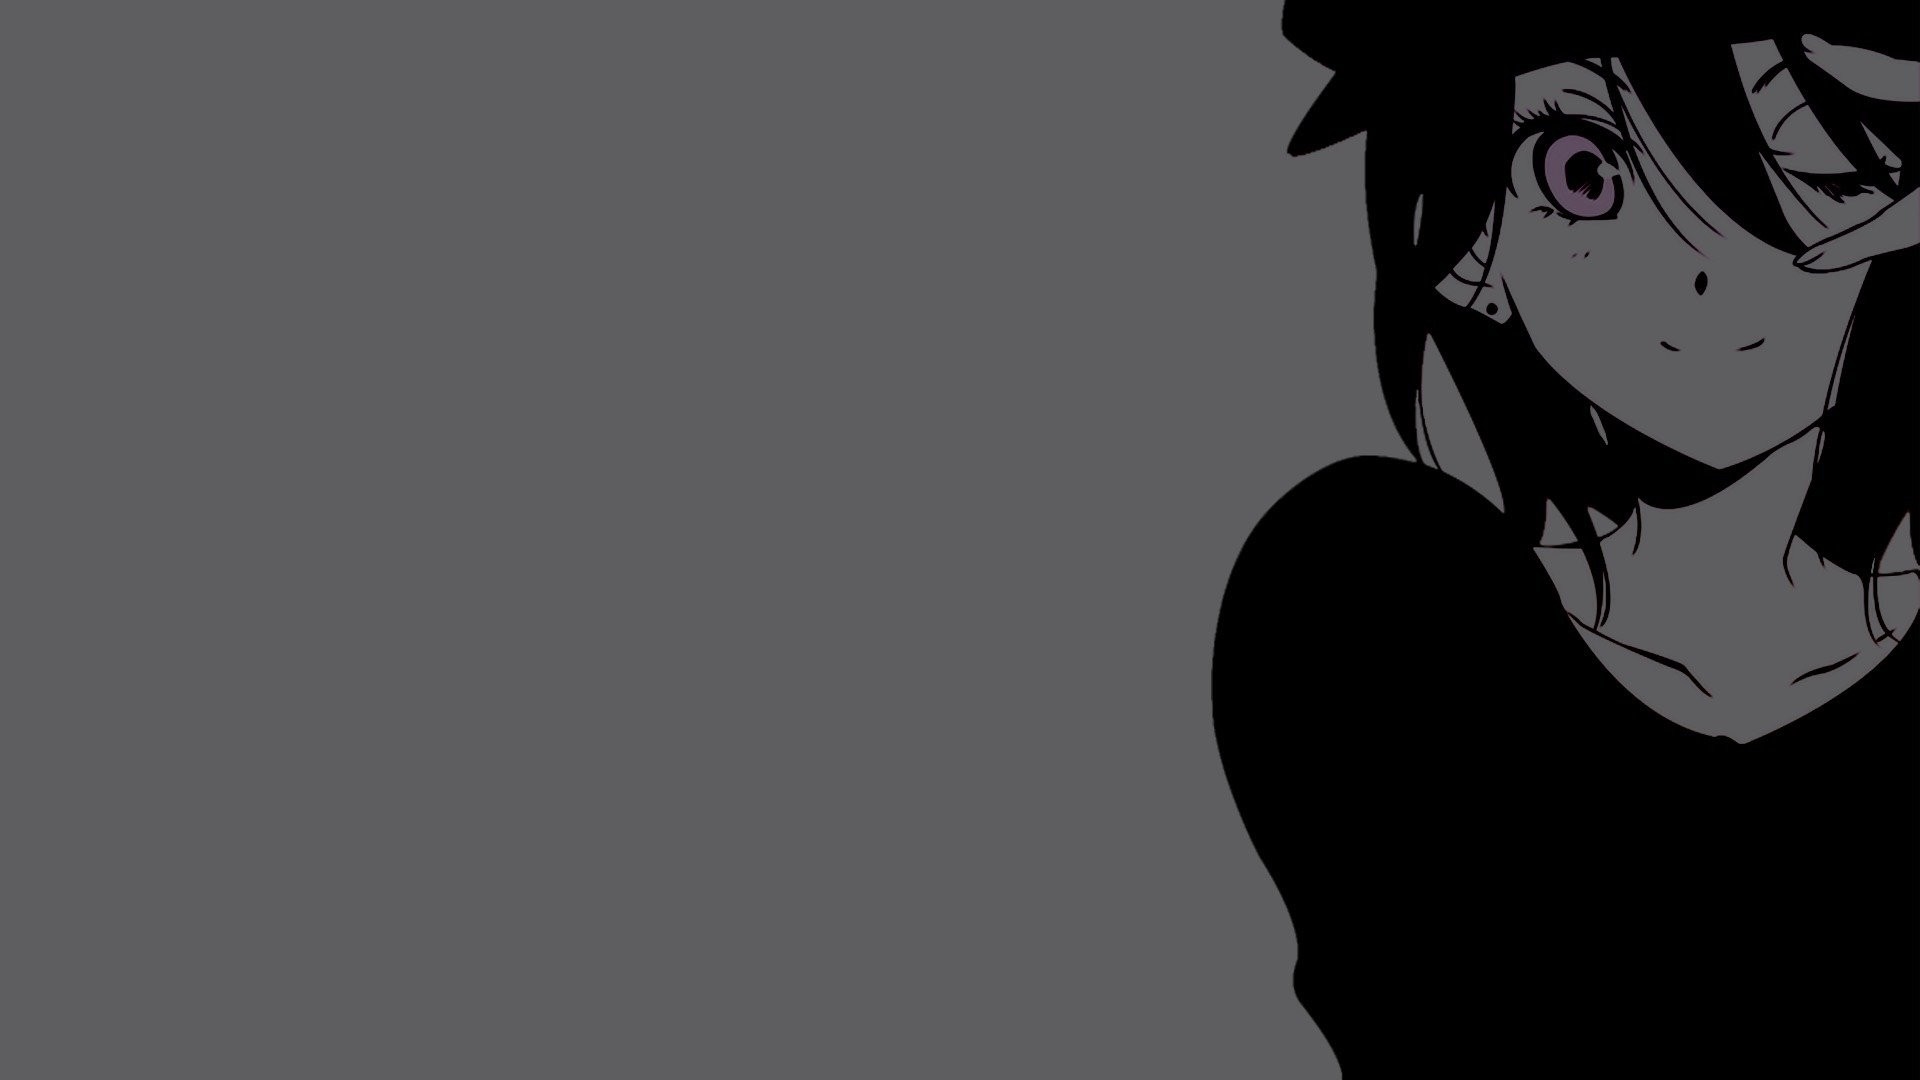 Anime Black And White Desktop Wallpaper